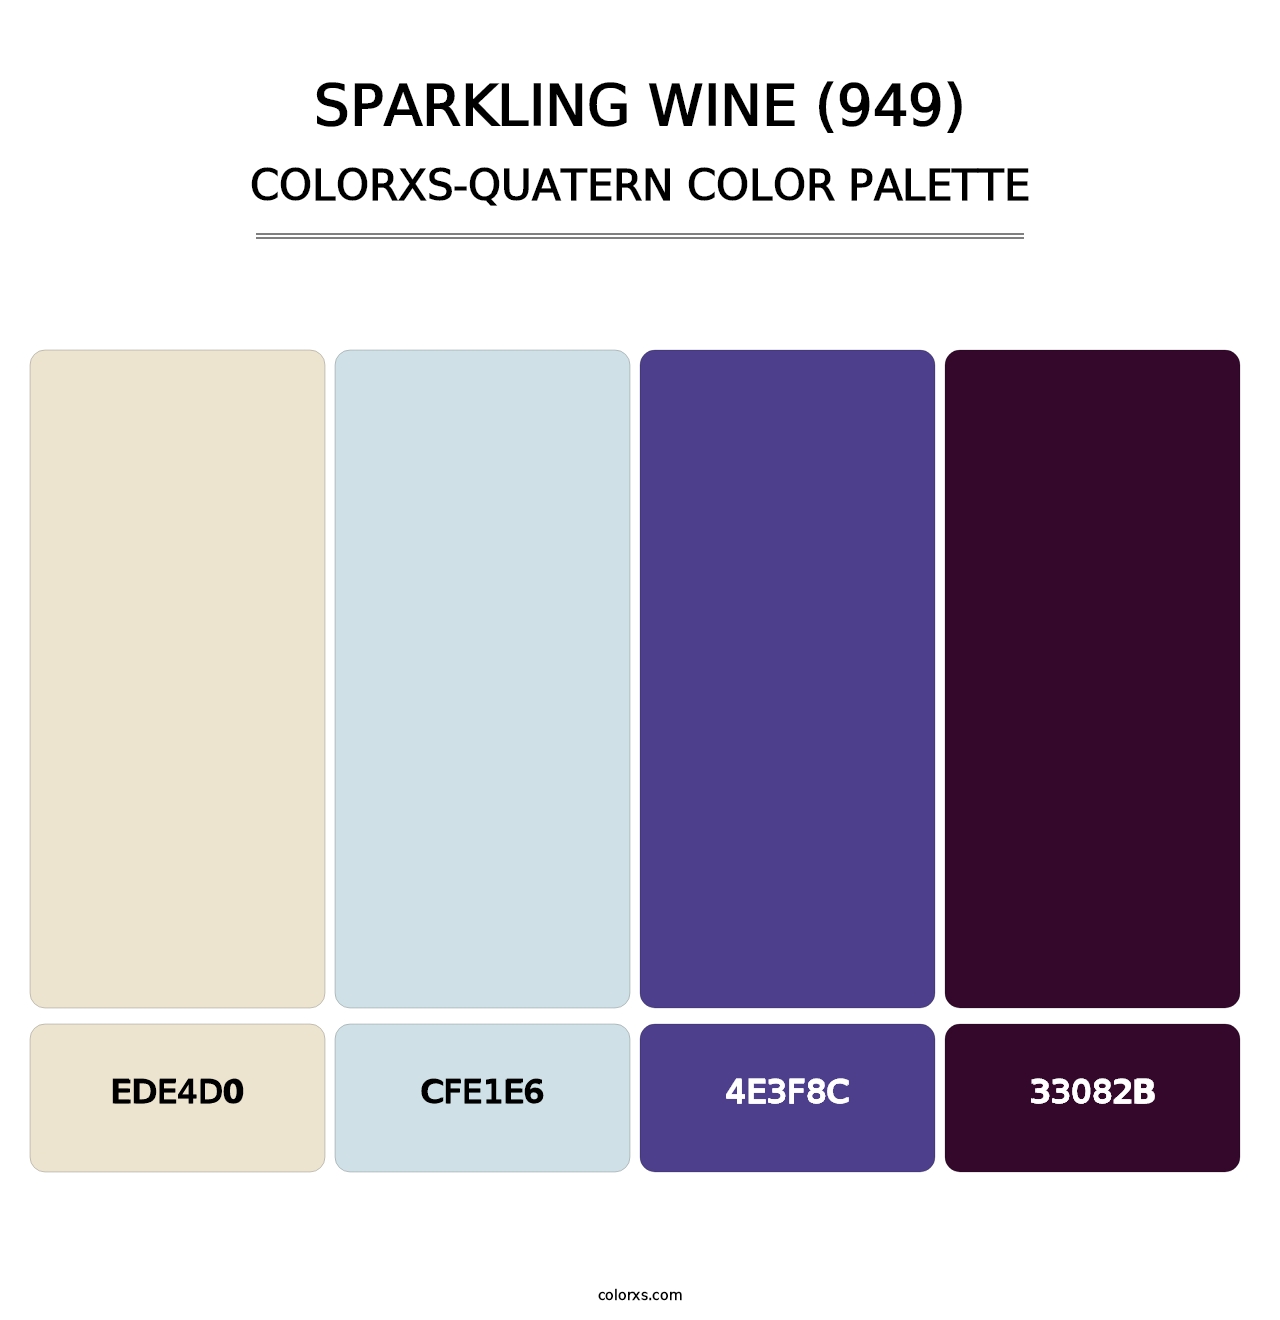 Sparkling Wine (949) - Colorxs Quatern Palette